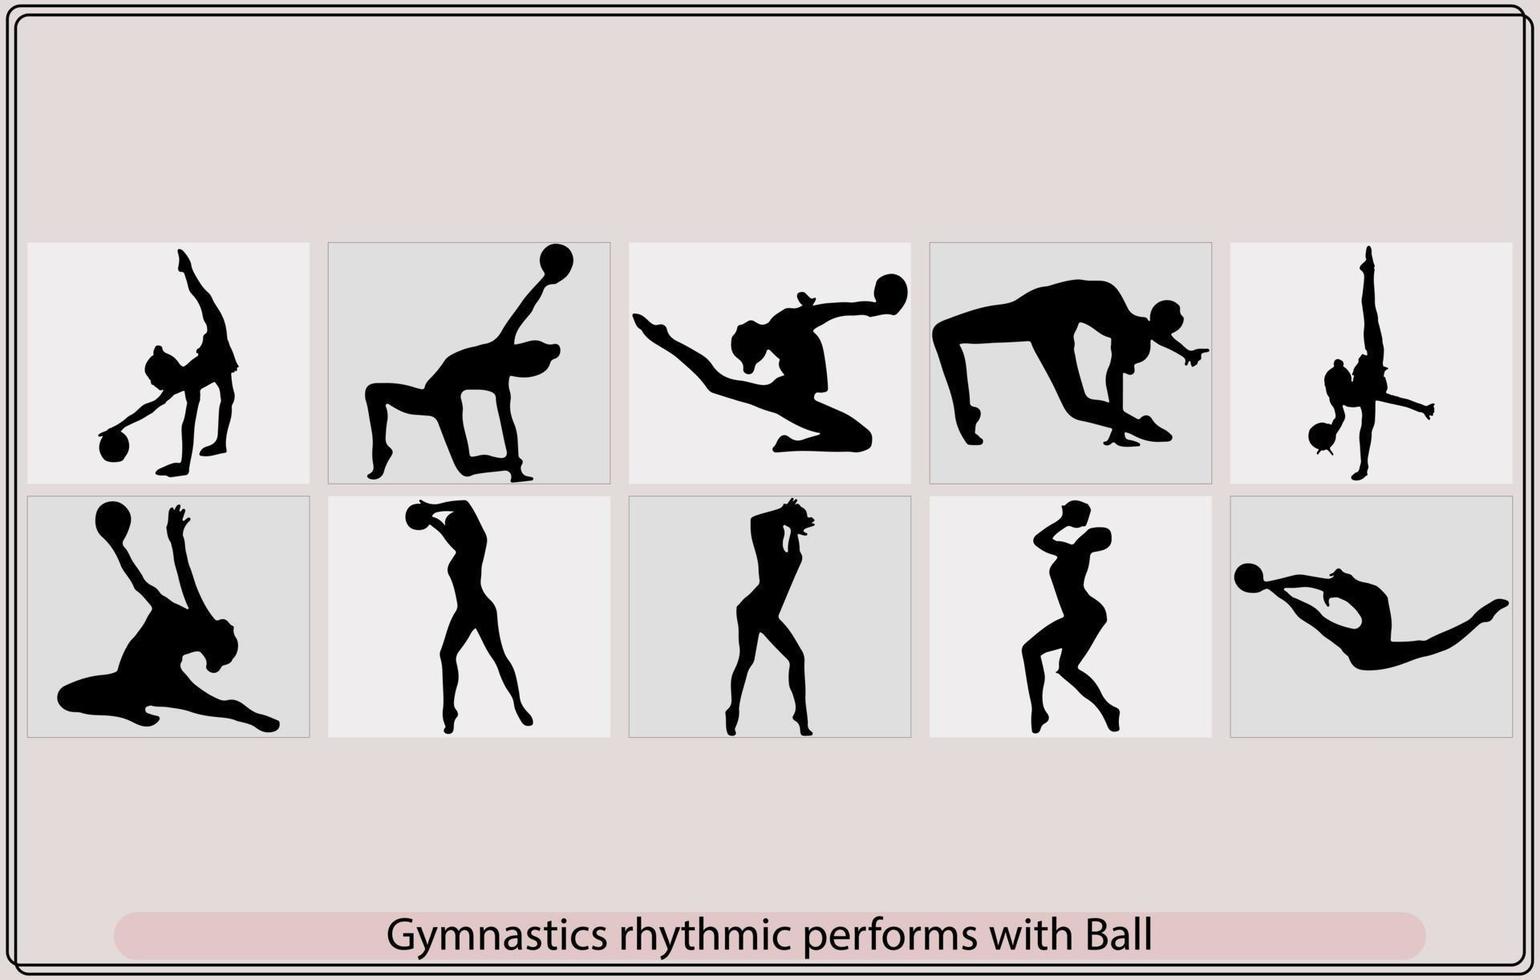 uppsättning av rytmisk gymnastik silhuetter, rytmisk gymnastik silhuett sport vektor illustration, rytmisk gymnast med en boll i en utgör